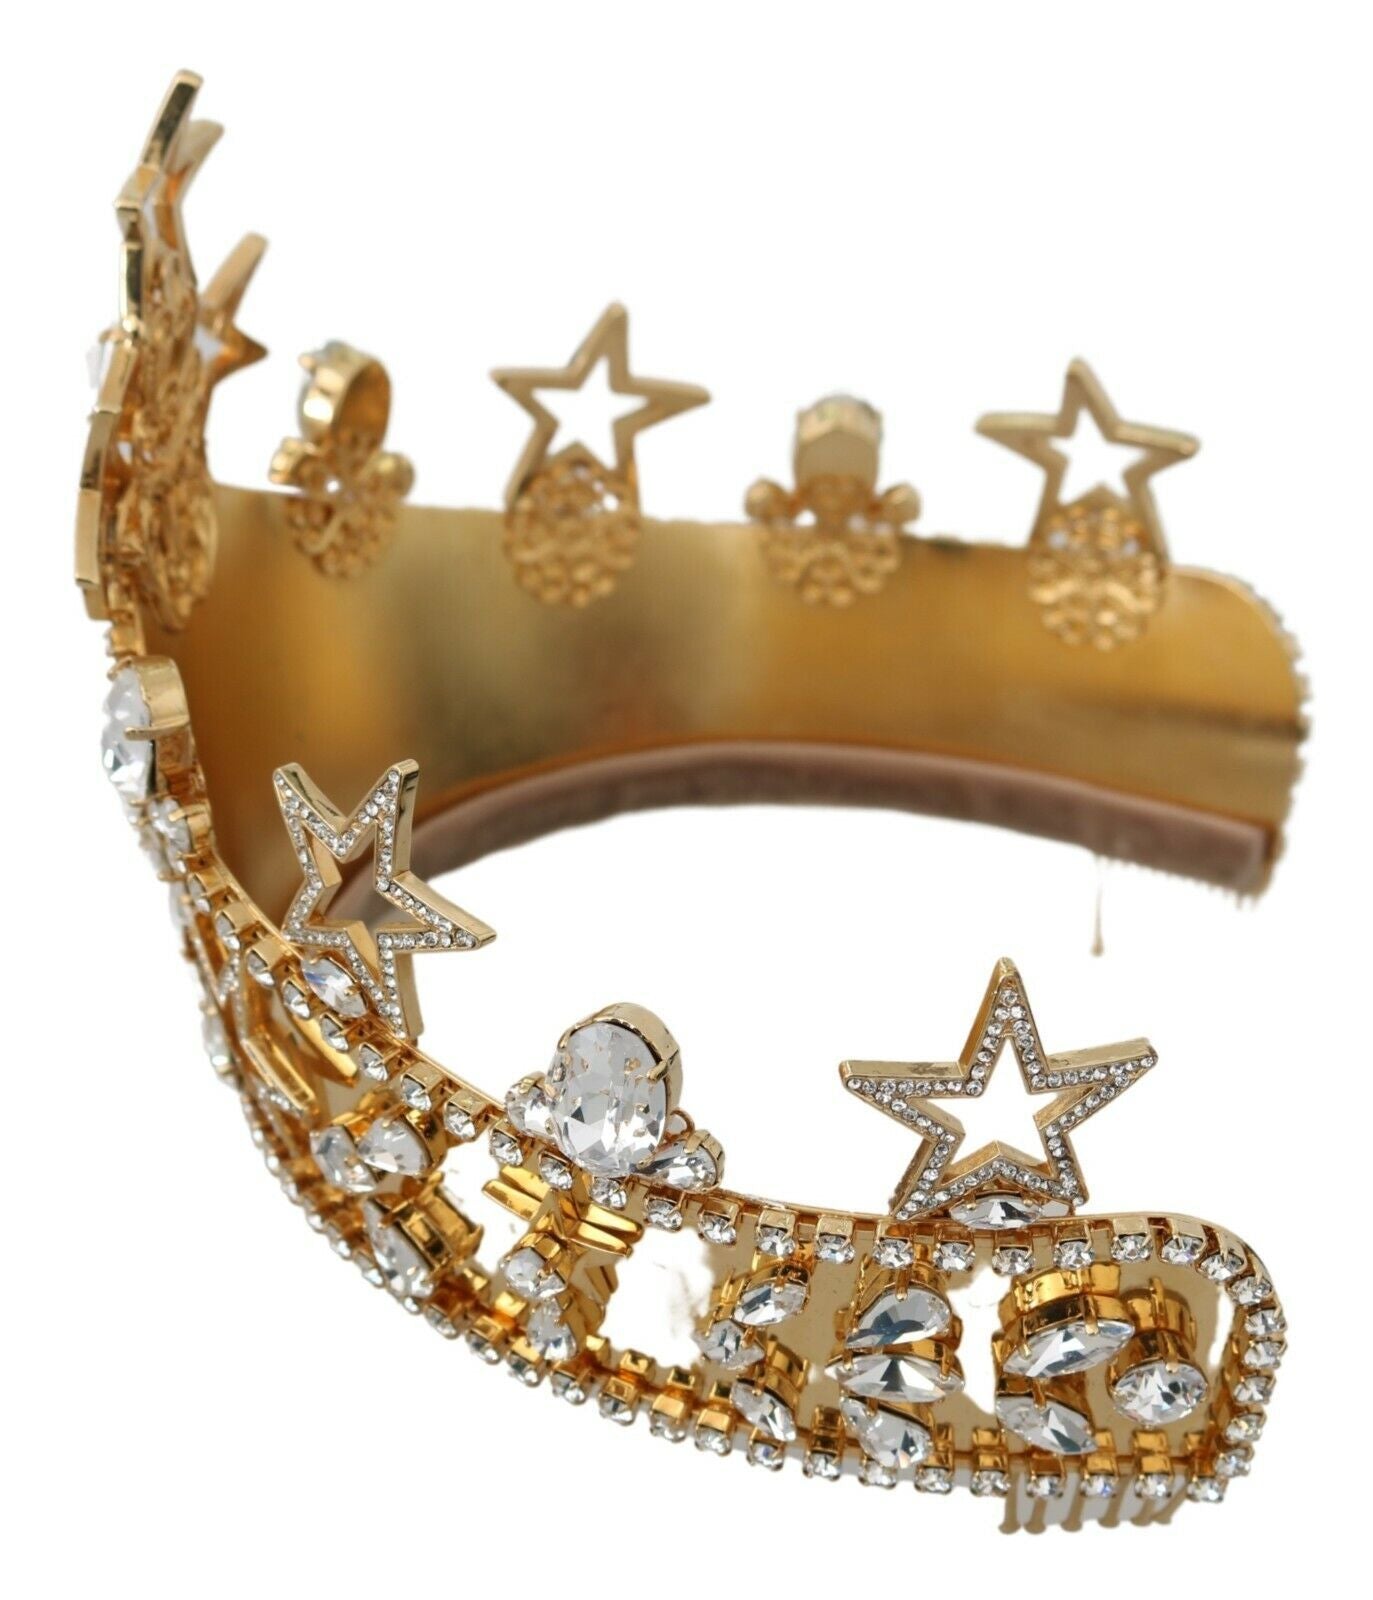 Dolce & Gabbana Regal Crystal Diadem Gold Tiara